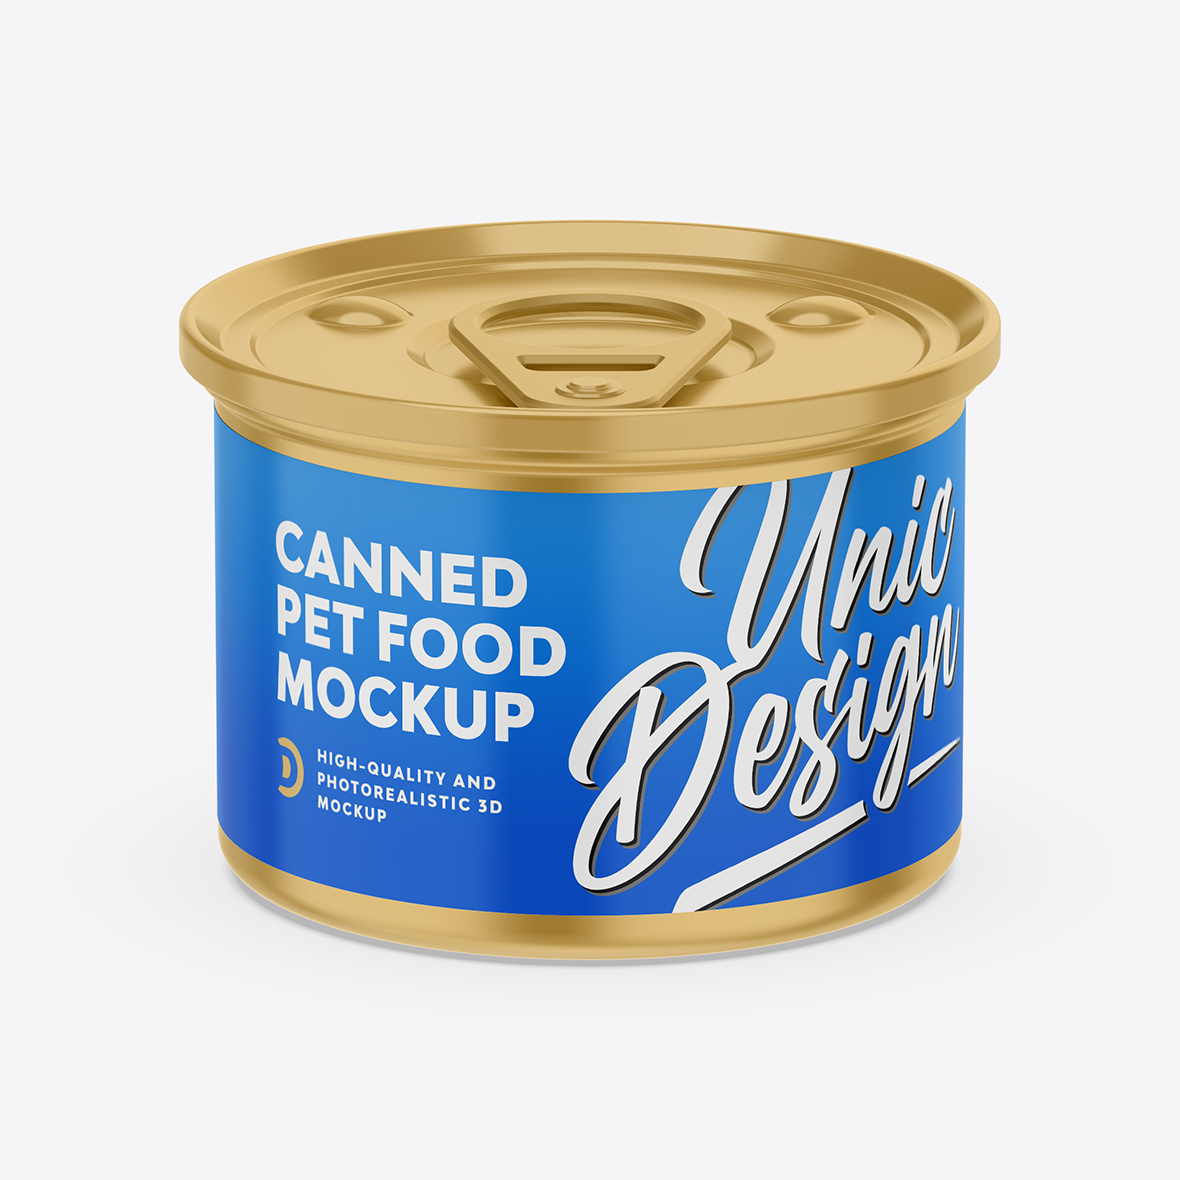 Canned Pet Food Mockup